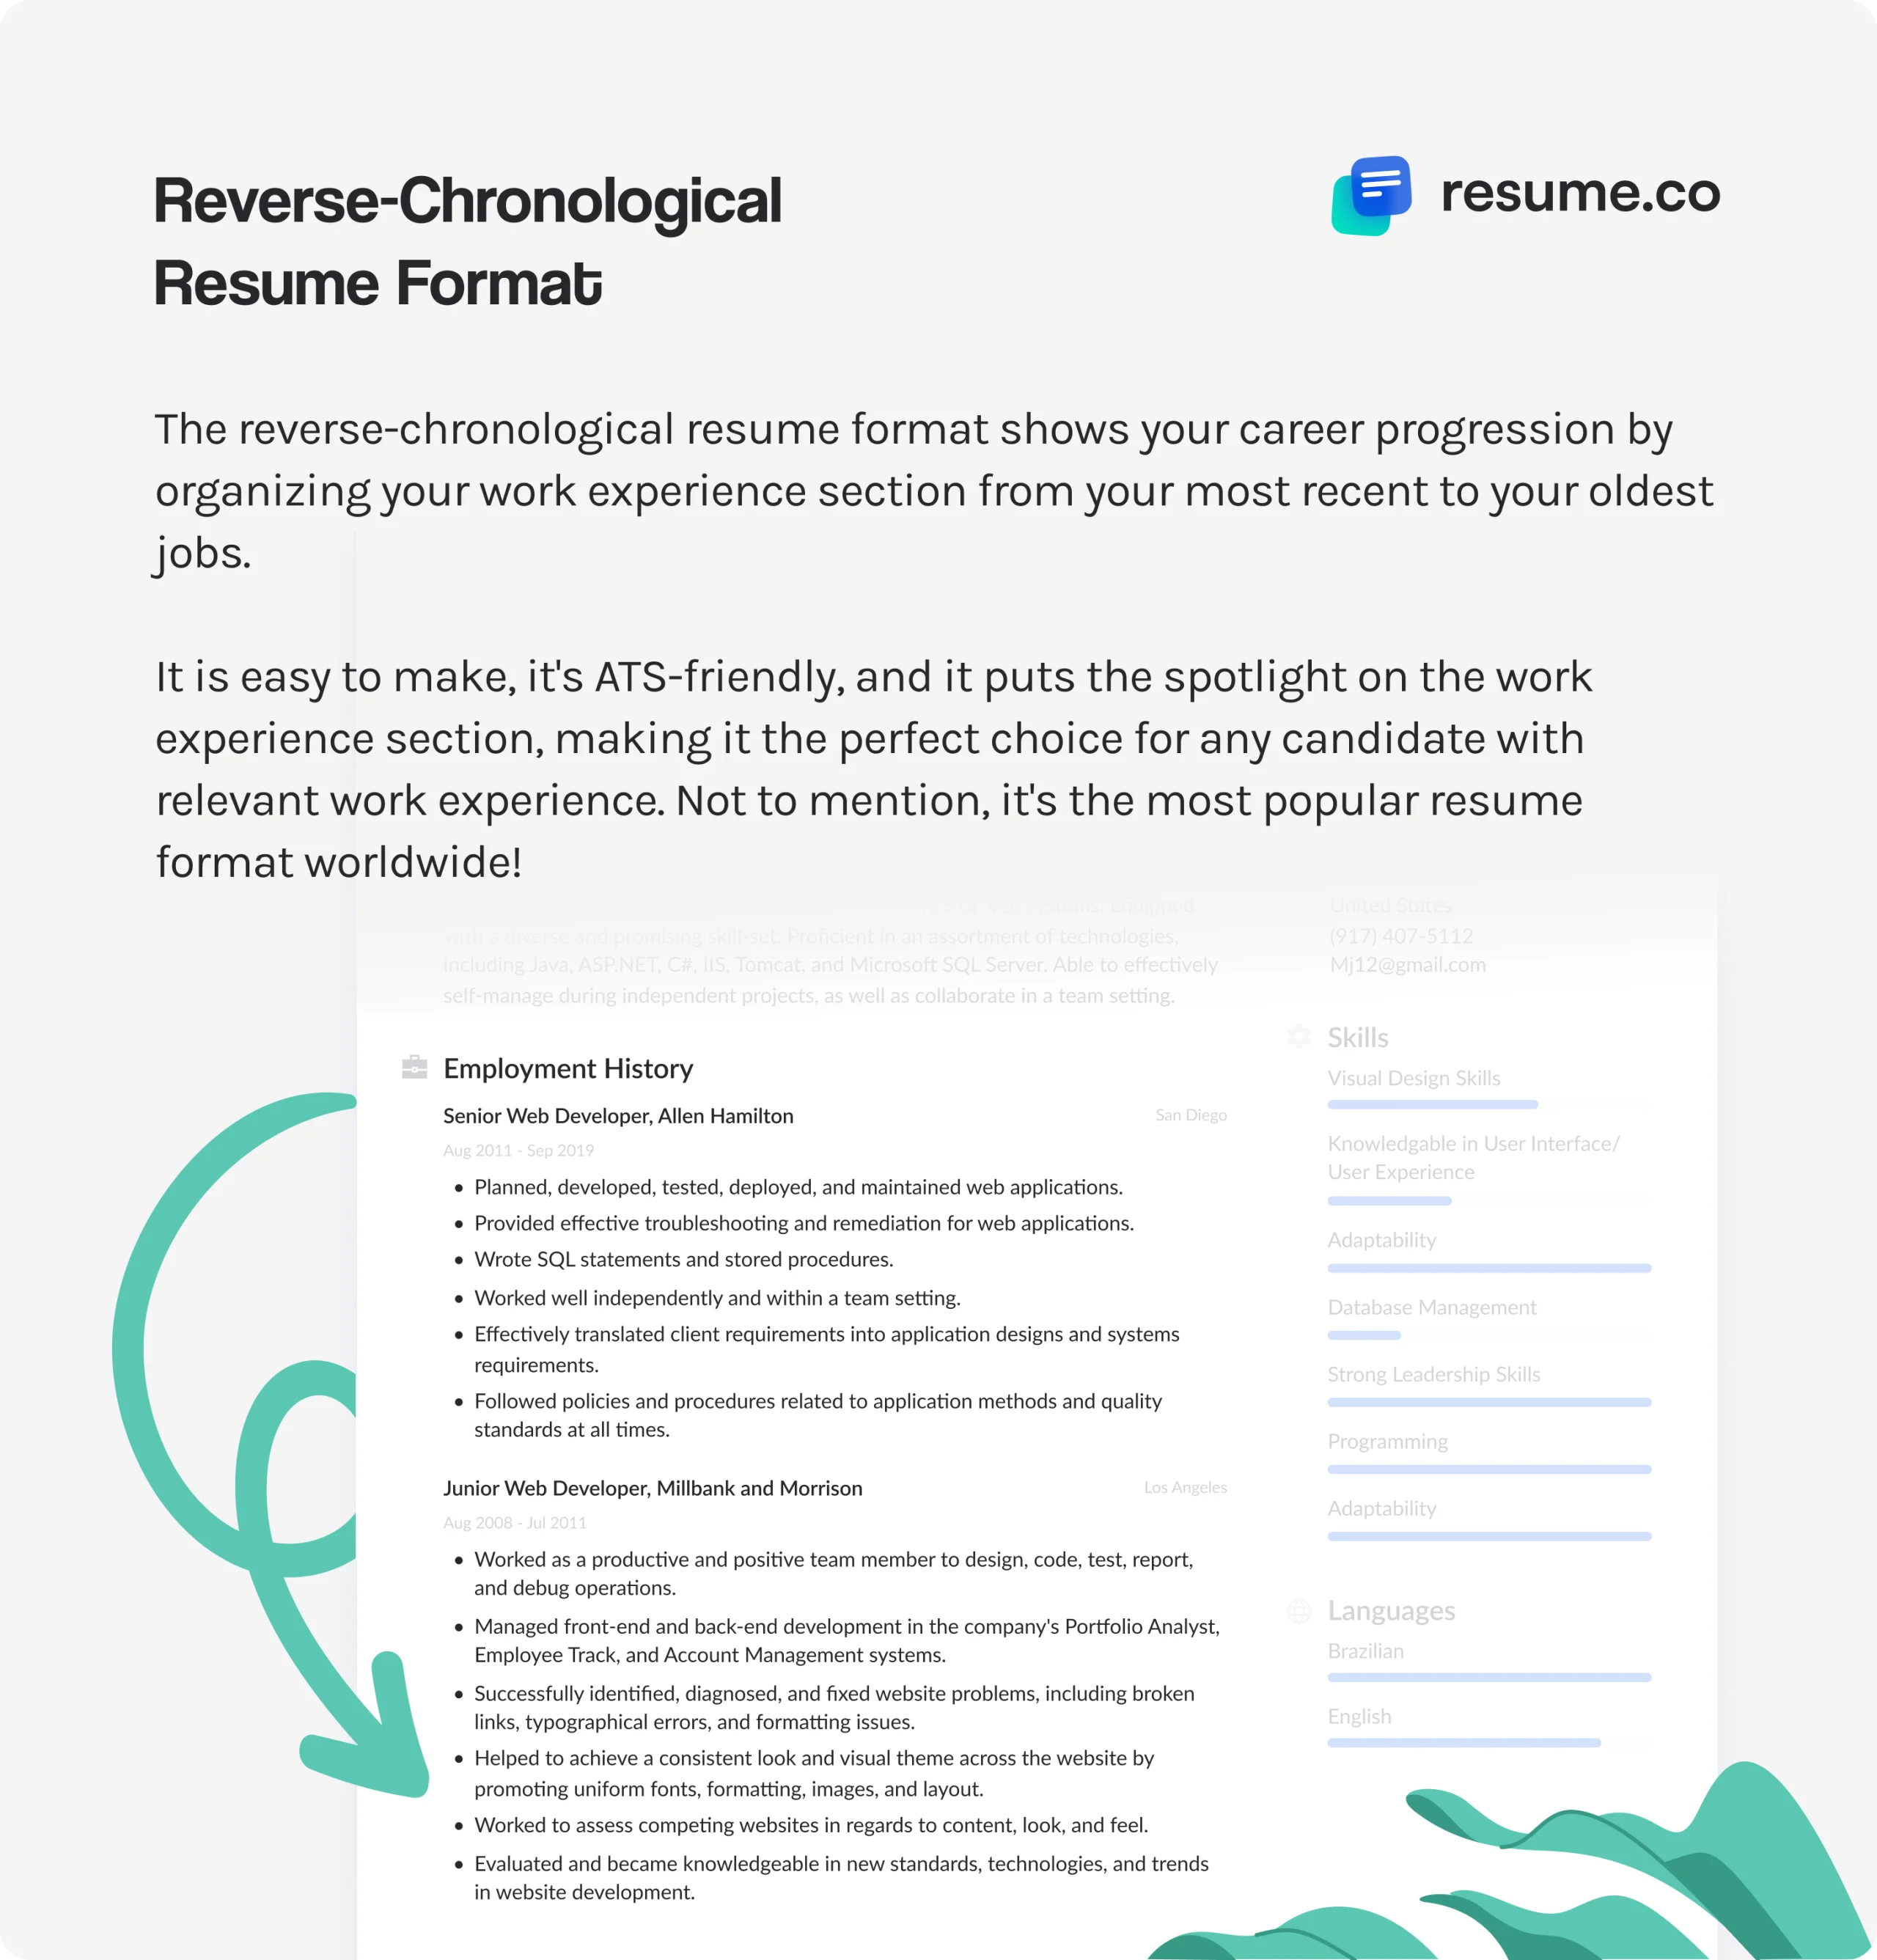 Reverse-chronological resume format